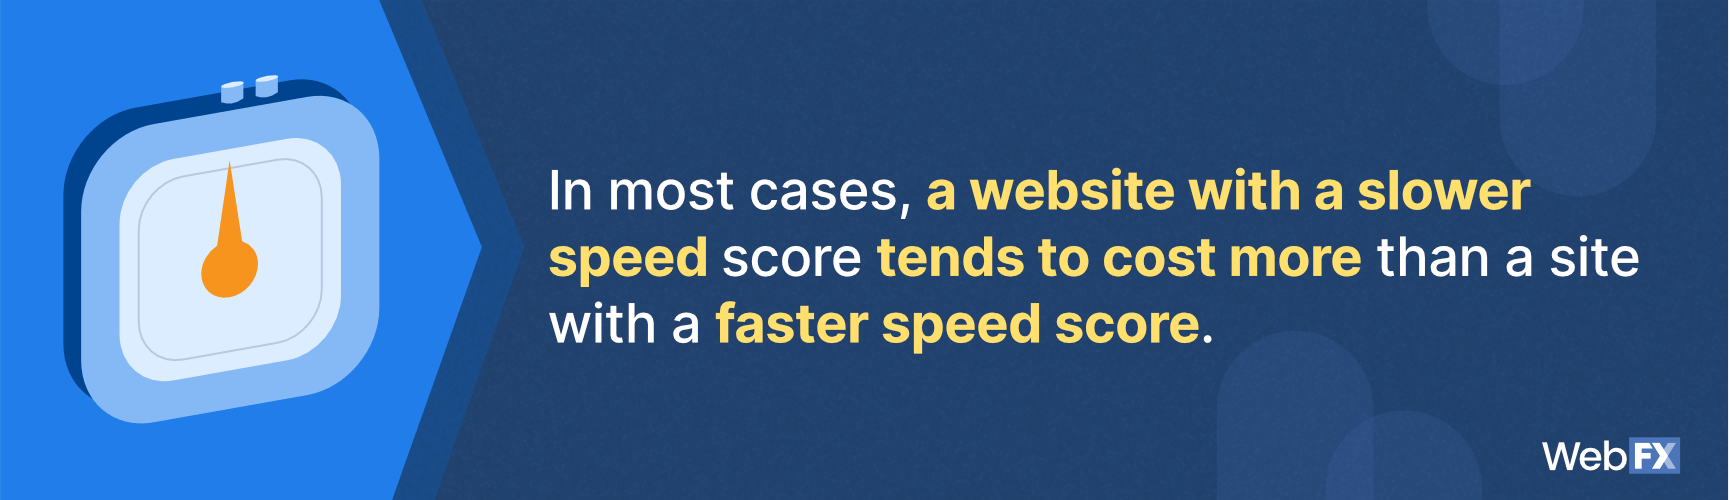 一份关于网站当前速度如何影响页面速度优化定价的声明